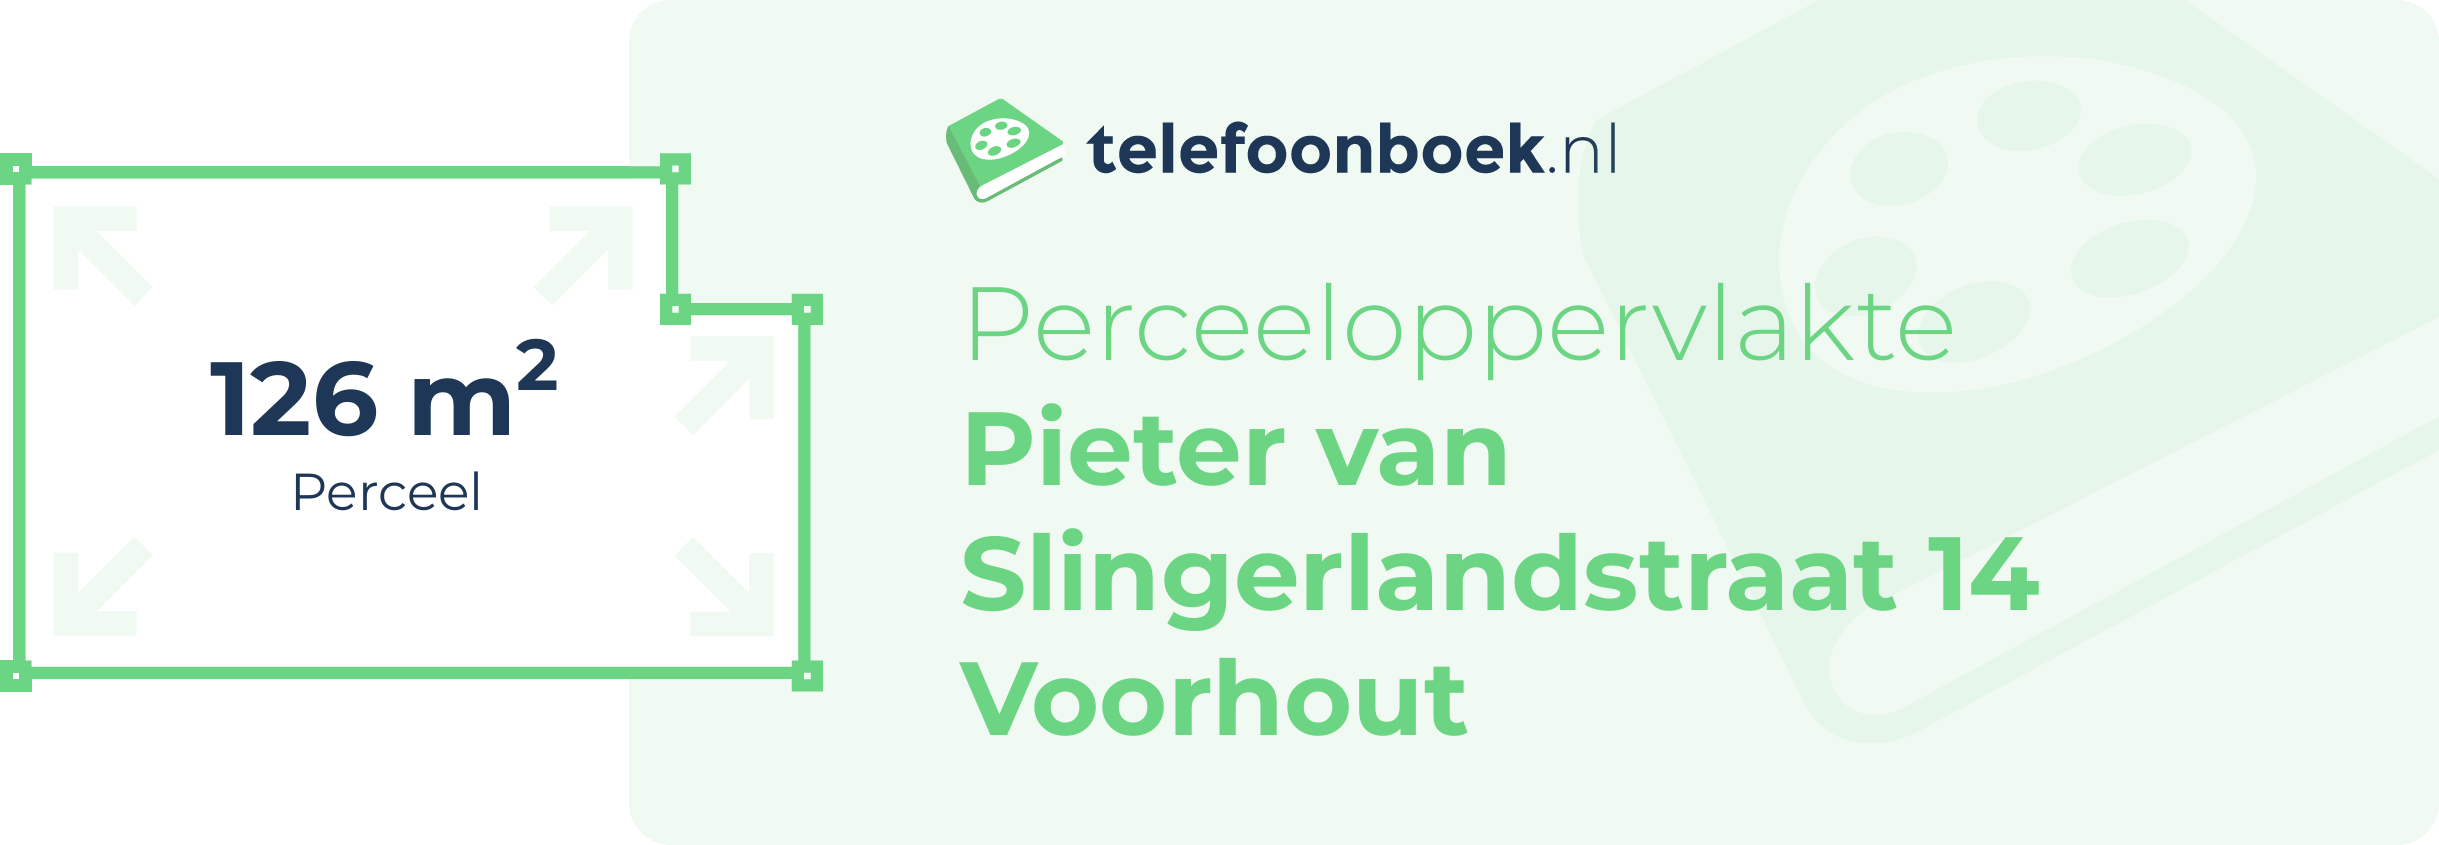 Perceeloppervlakte Pieter Van Slingerlandstraat 14 Voorhout